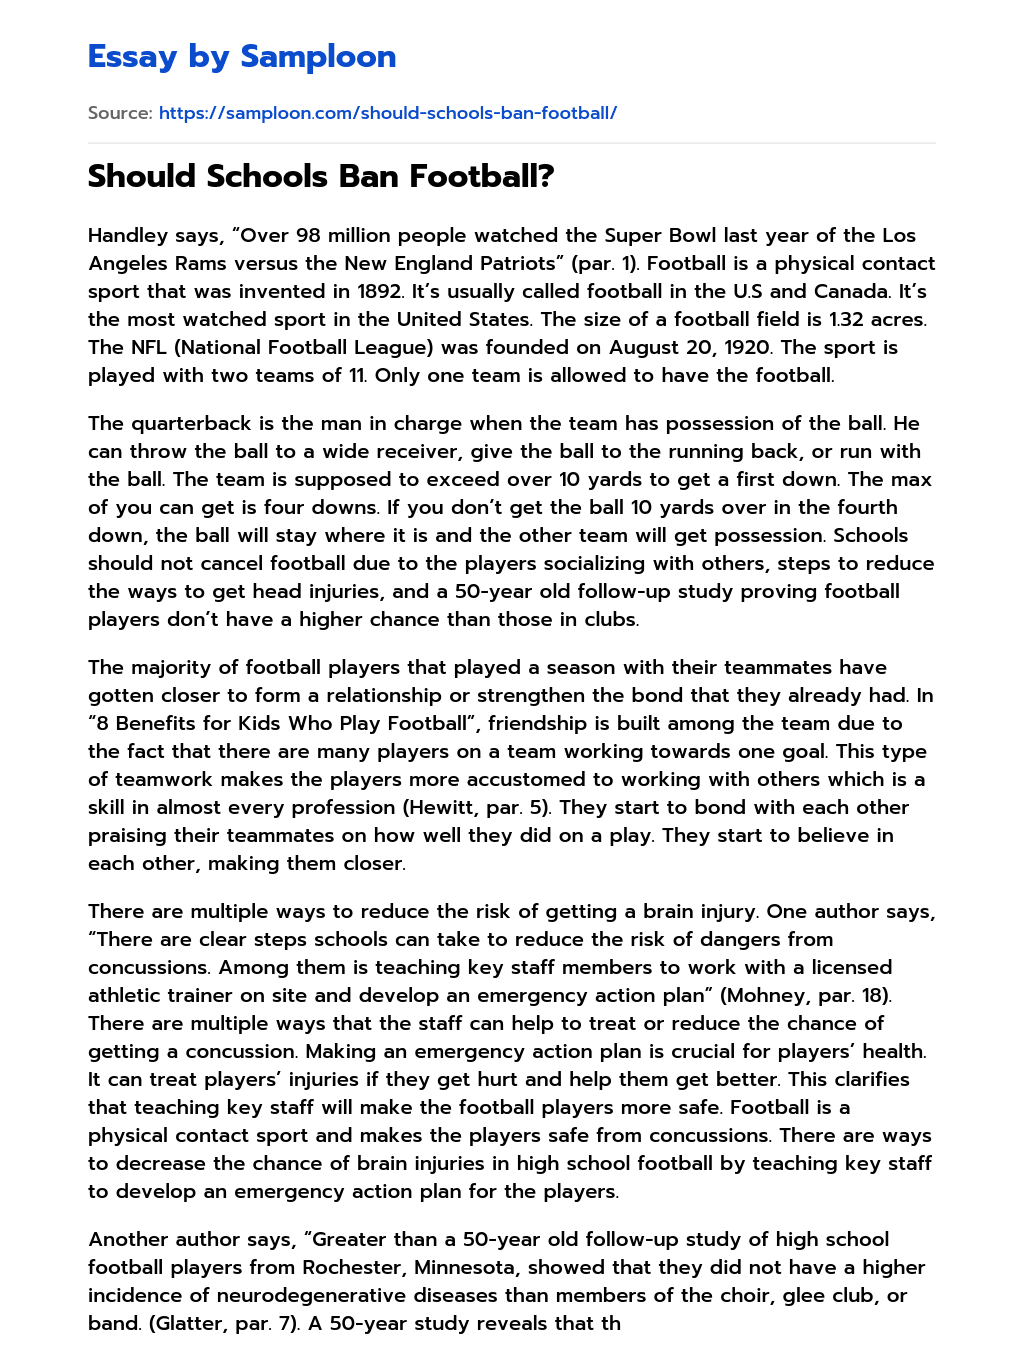 Should Schools Ban Football? essay